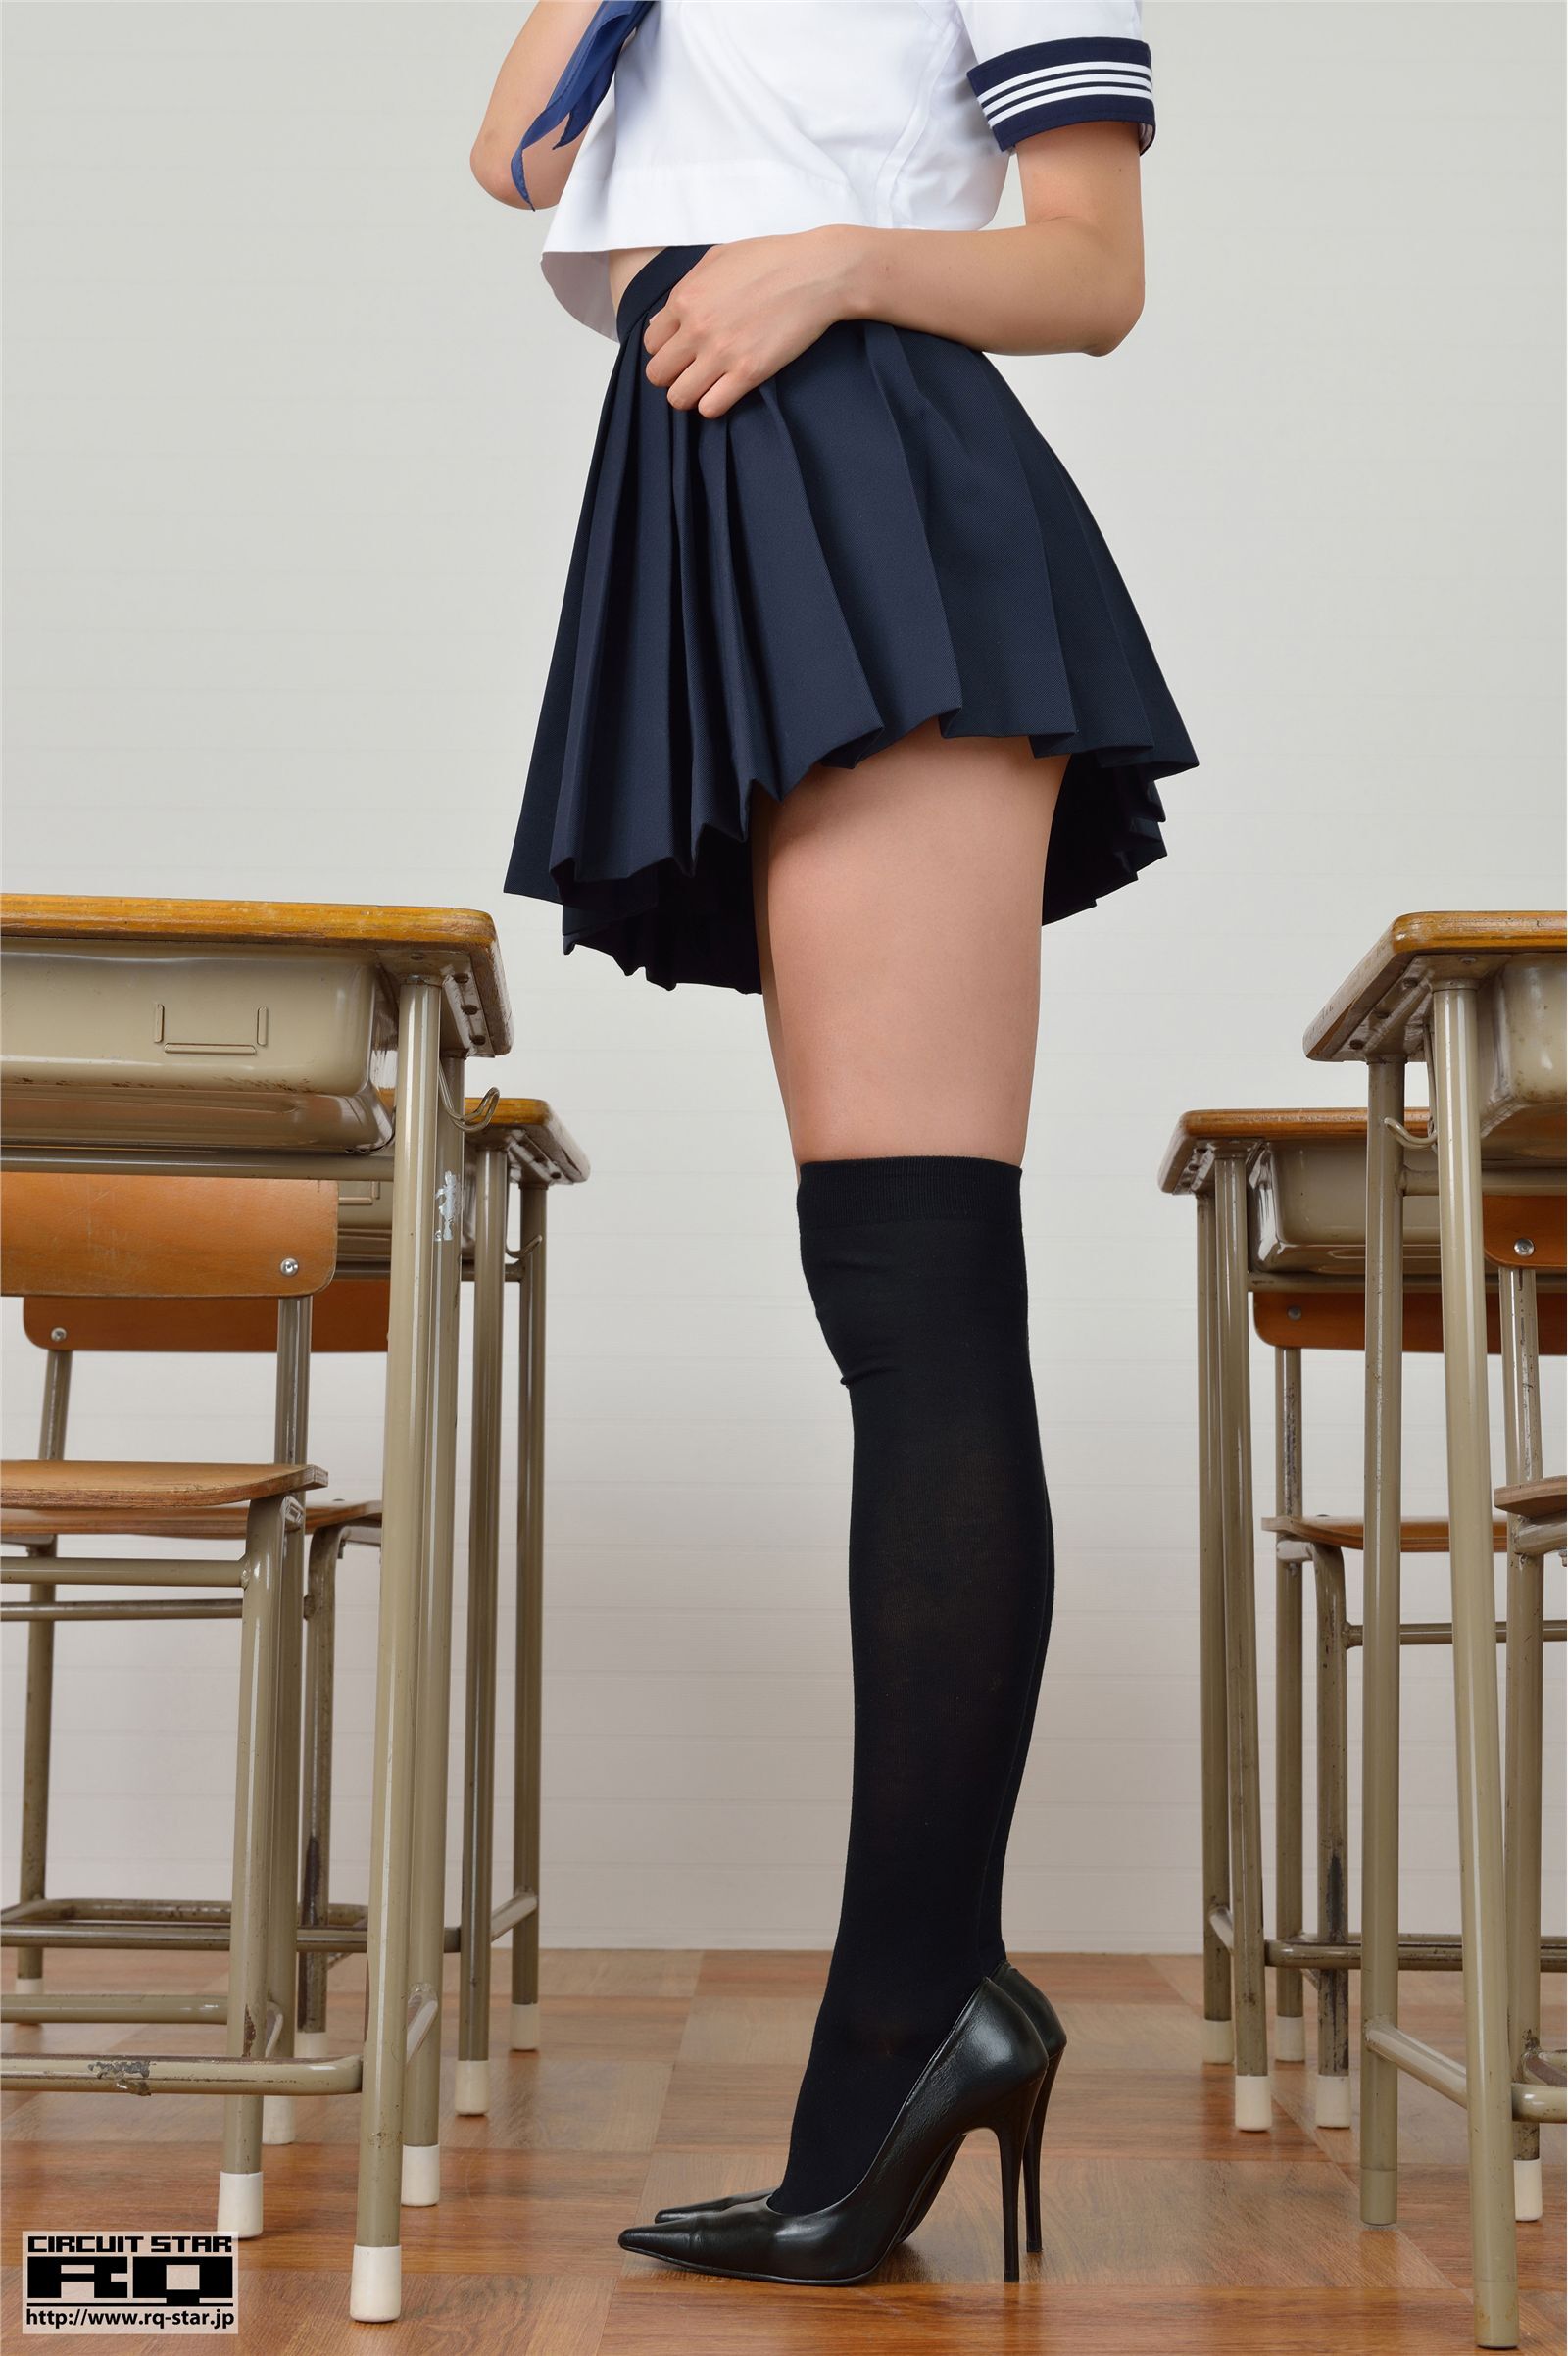 Nakagawa Shizuka Japanese uniform office girl [RQ star] no.00691